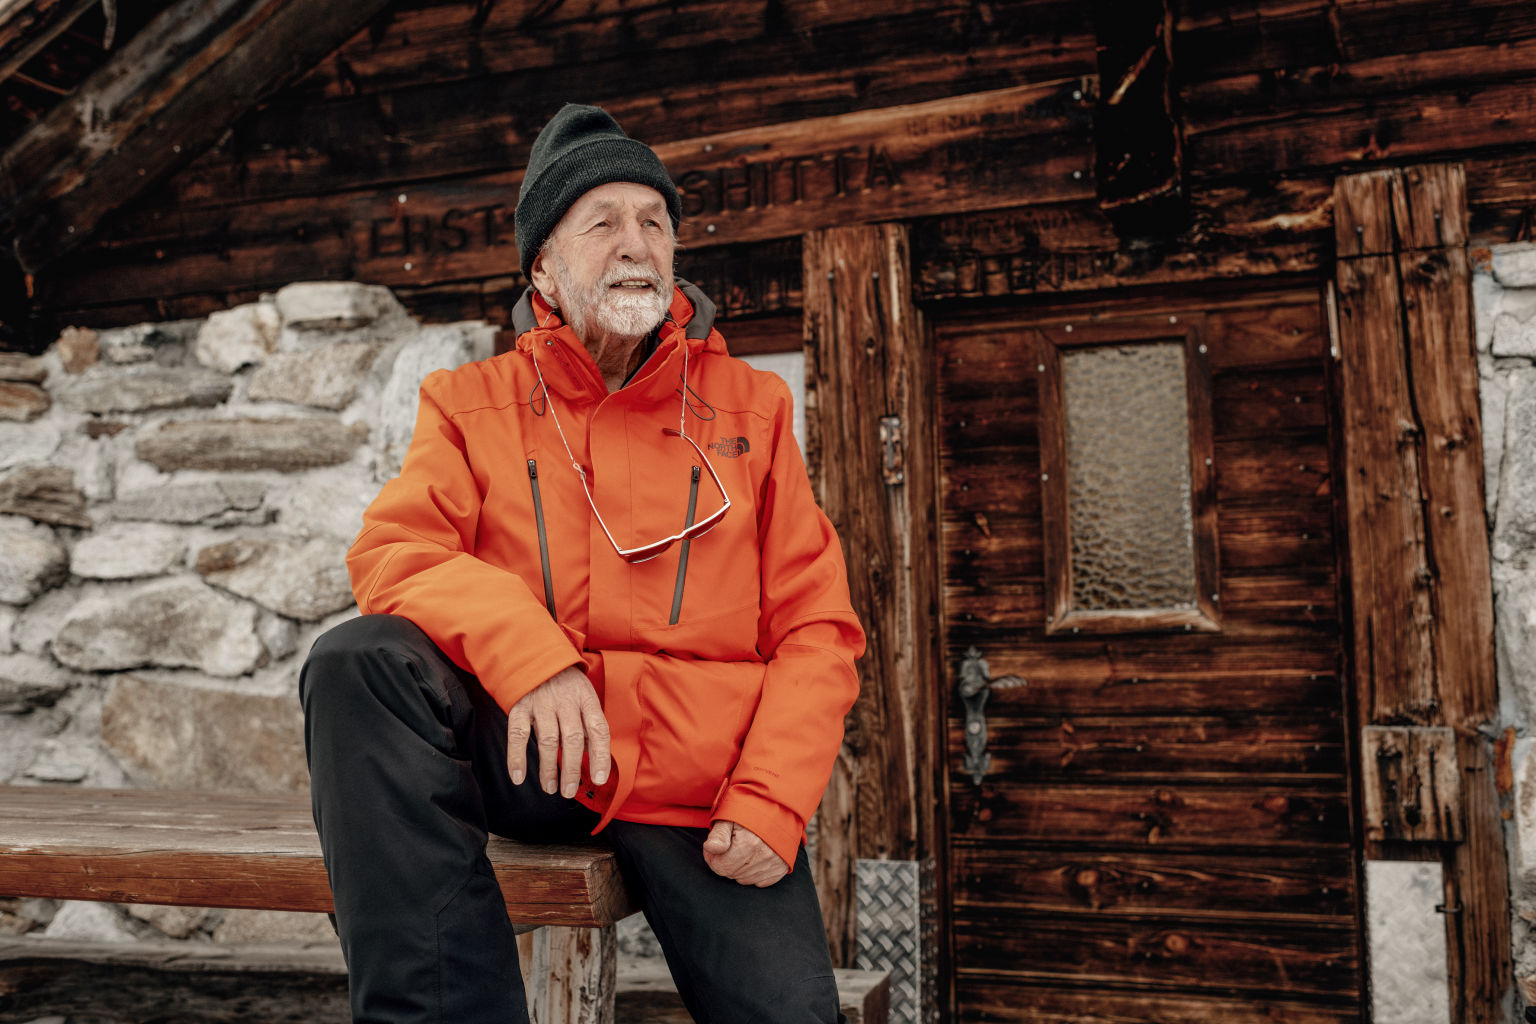 Edelbert Kummer de l'histoire "En apesanteur dans la neige", Valais, Suisse